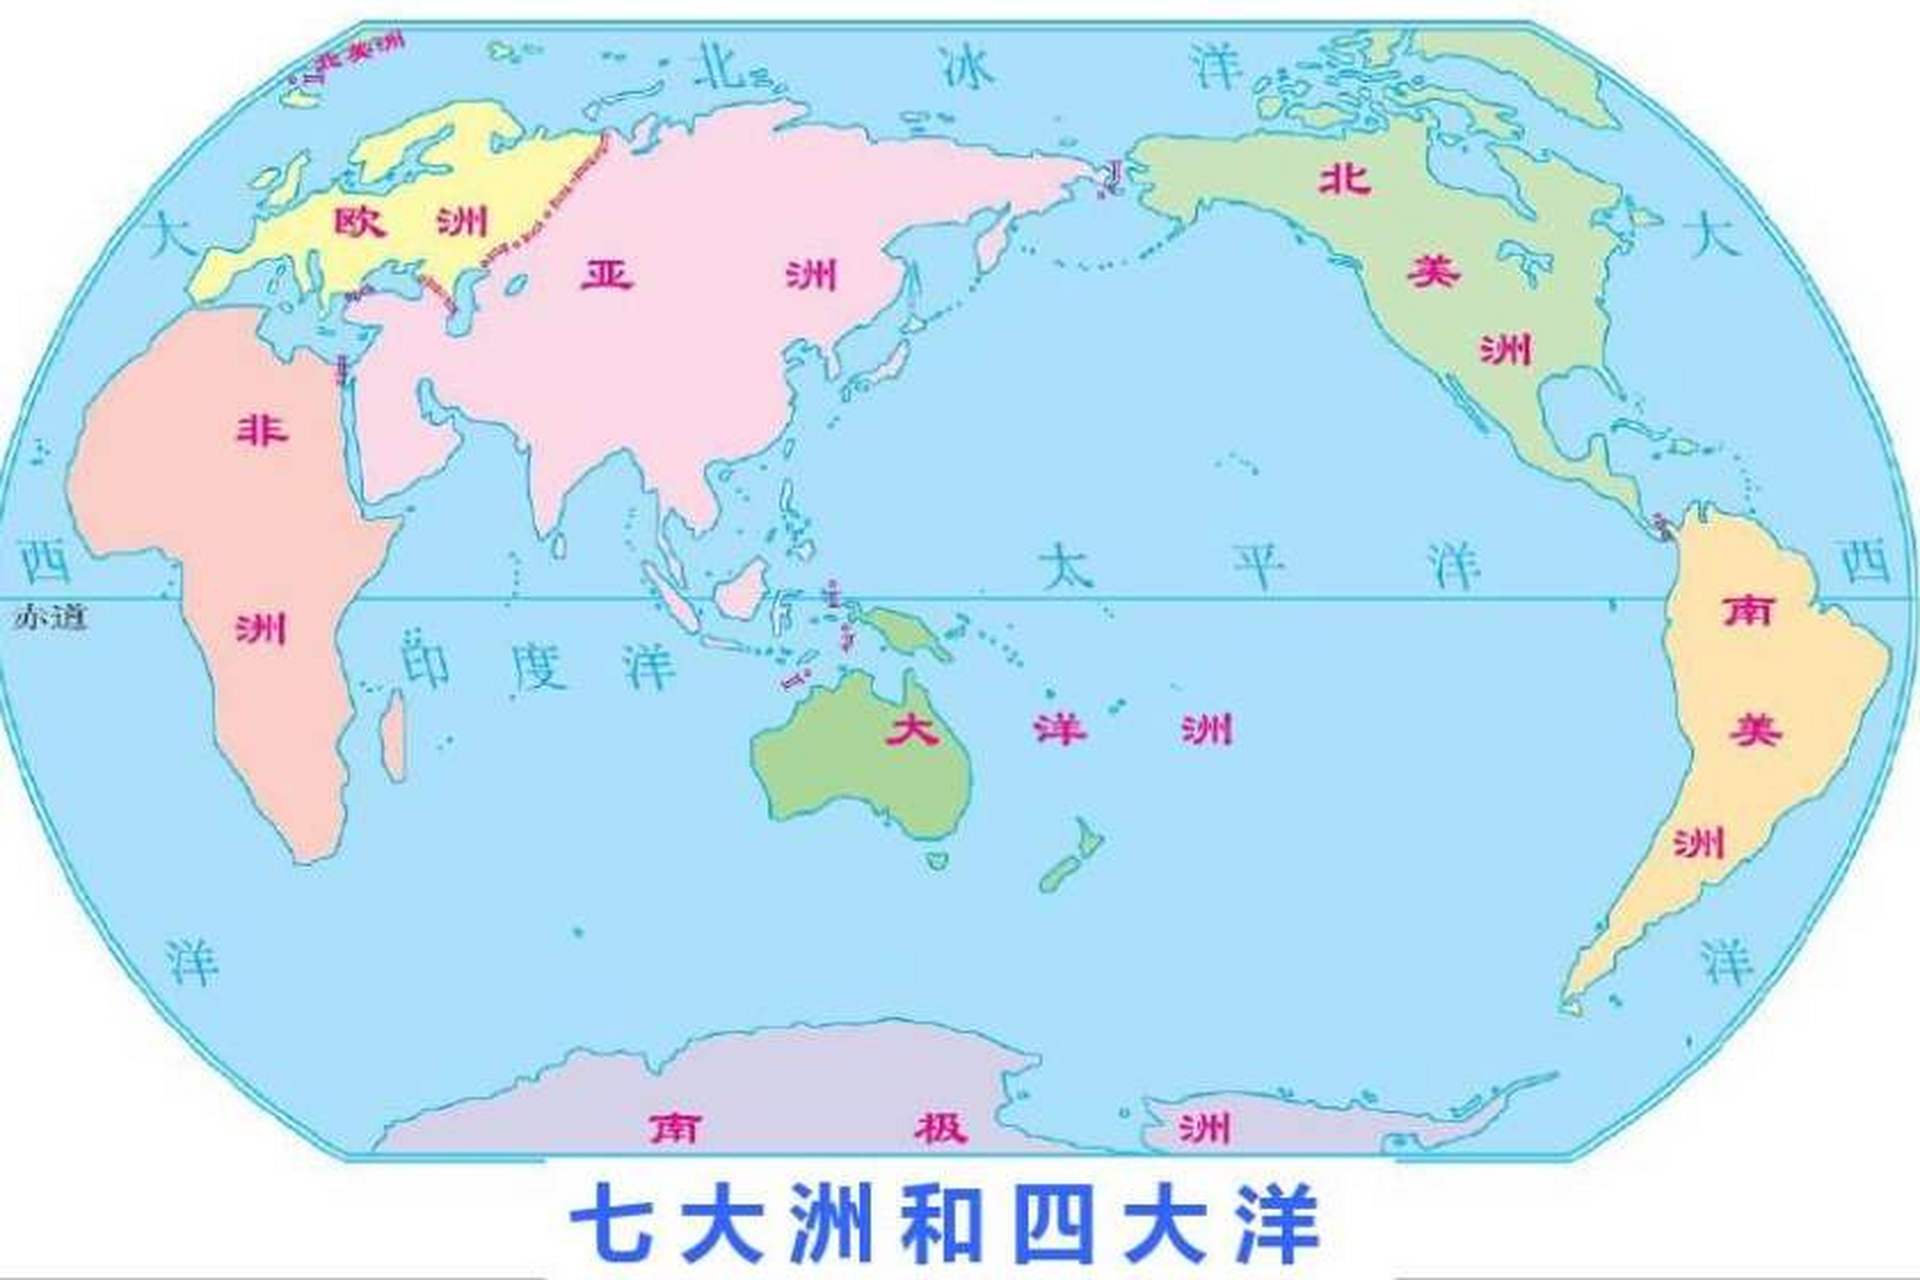 90地理之最,最大的洲  91地球上最大的洲是亚洲,占地面积达到44